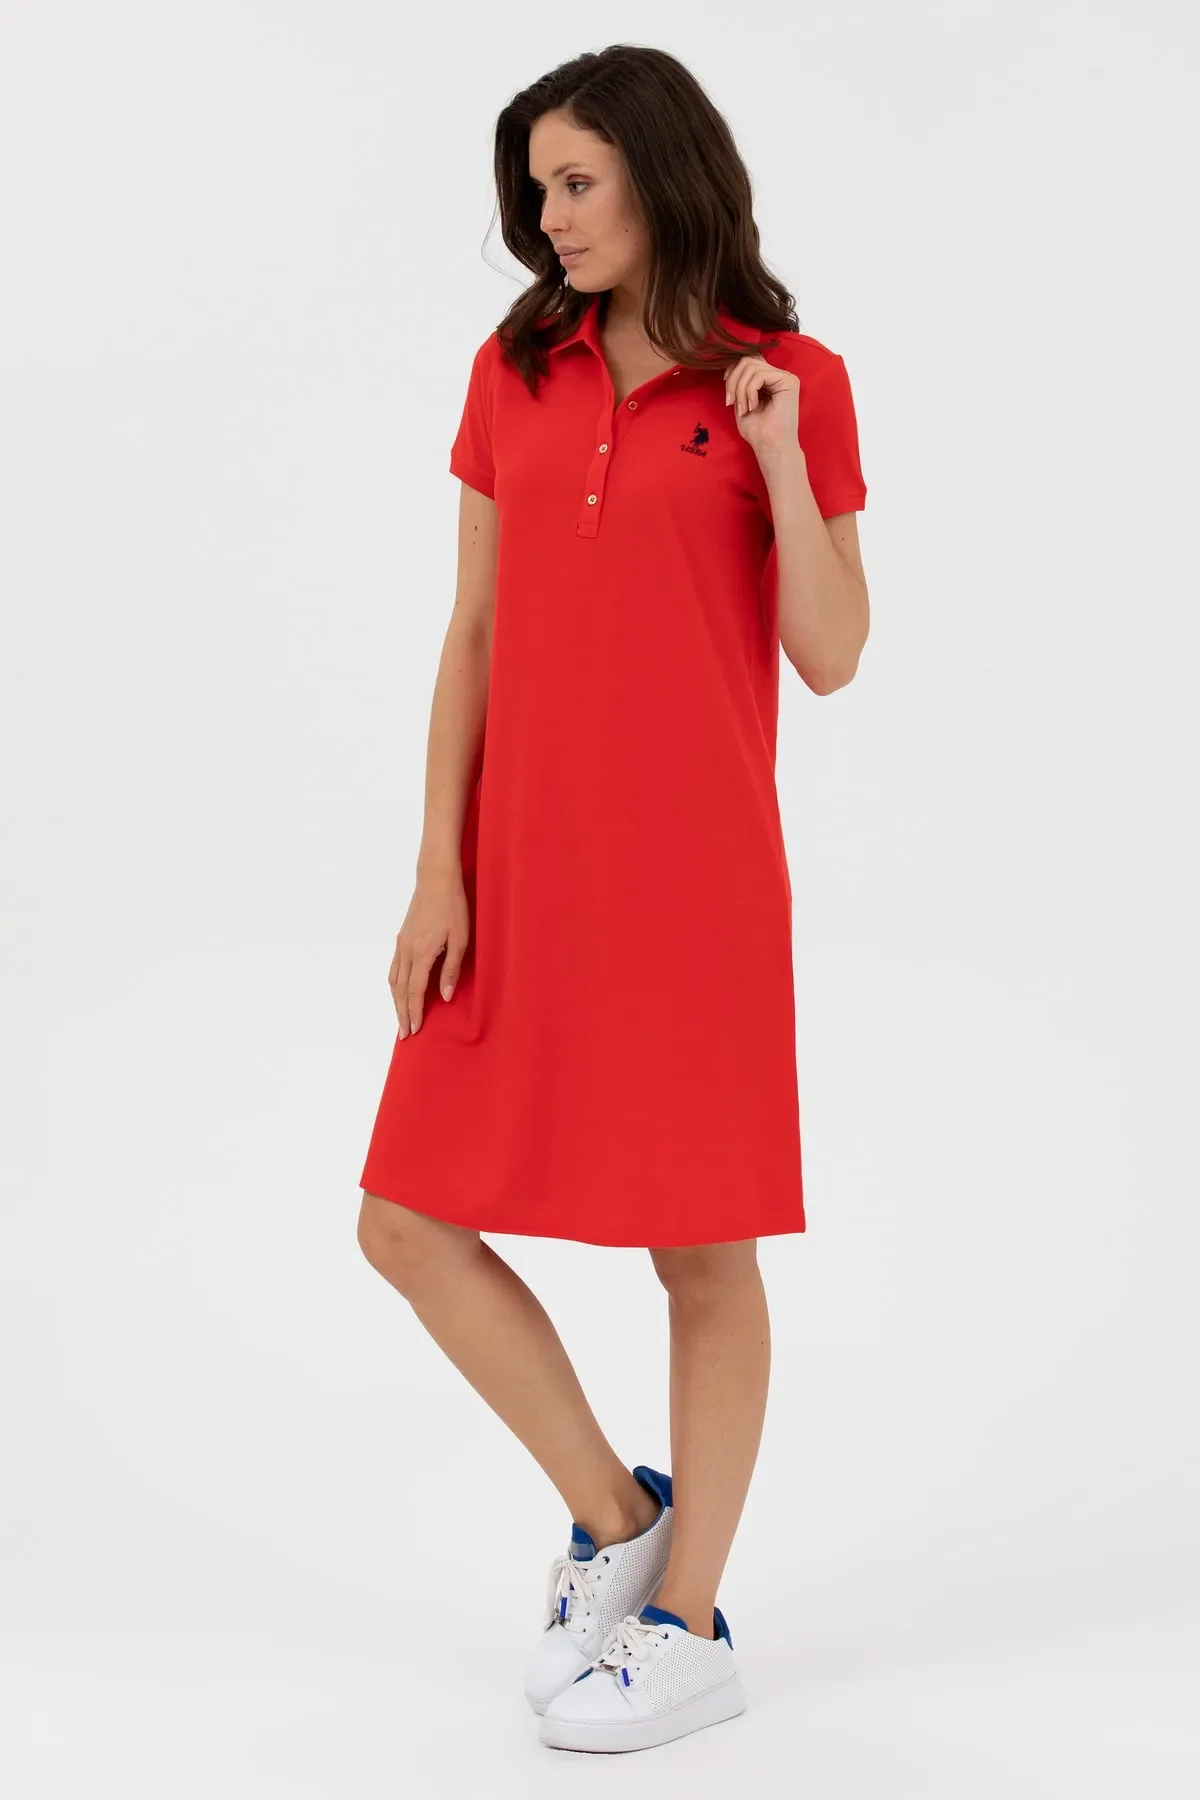 Kadın Polo Yaka Örme Elbise-Kırmızı - 2